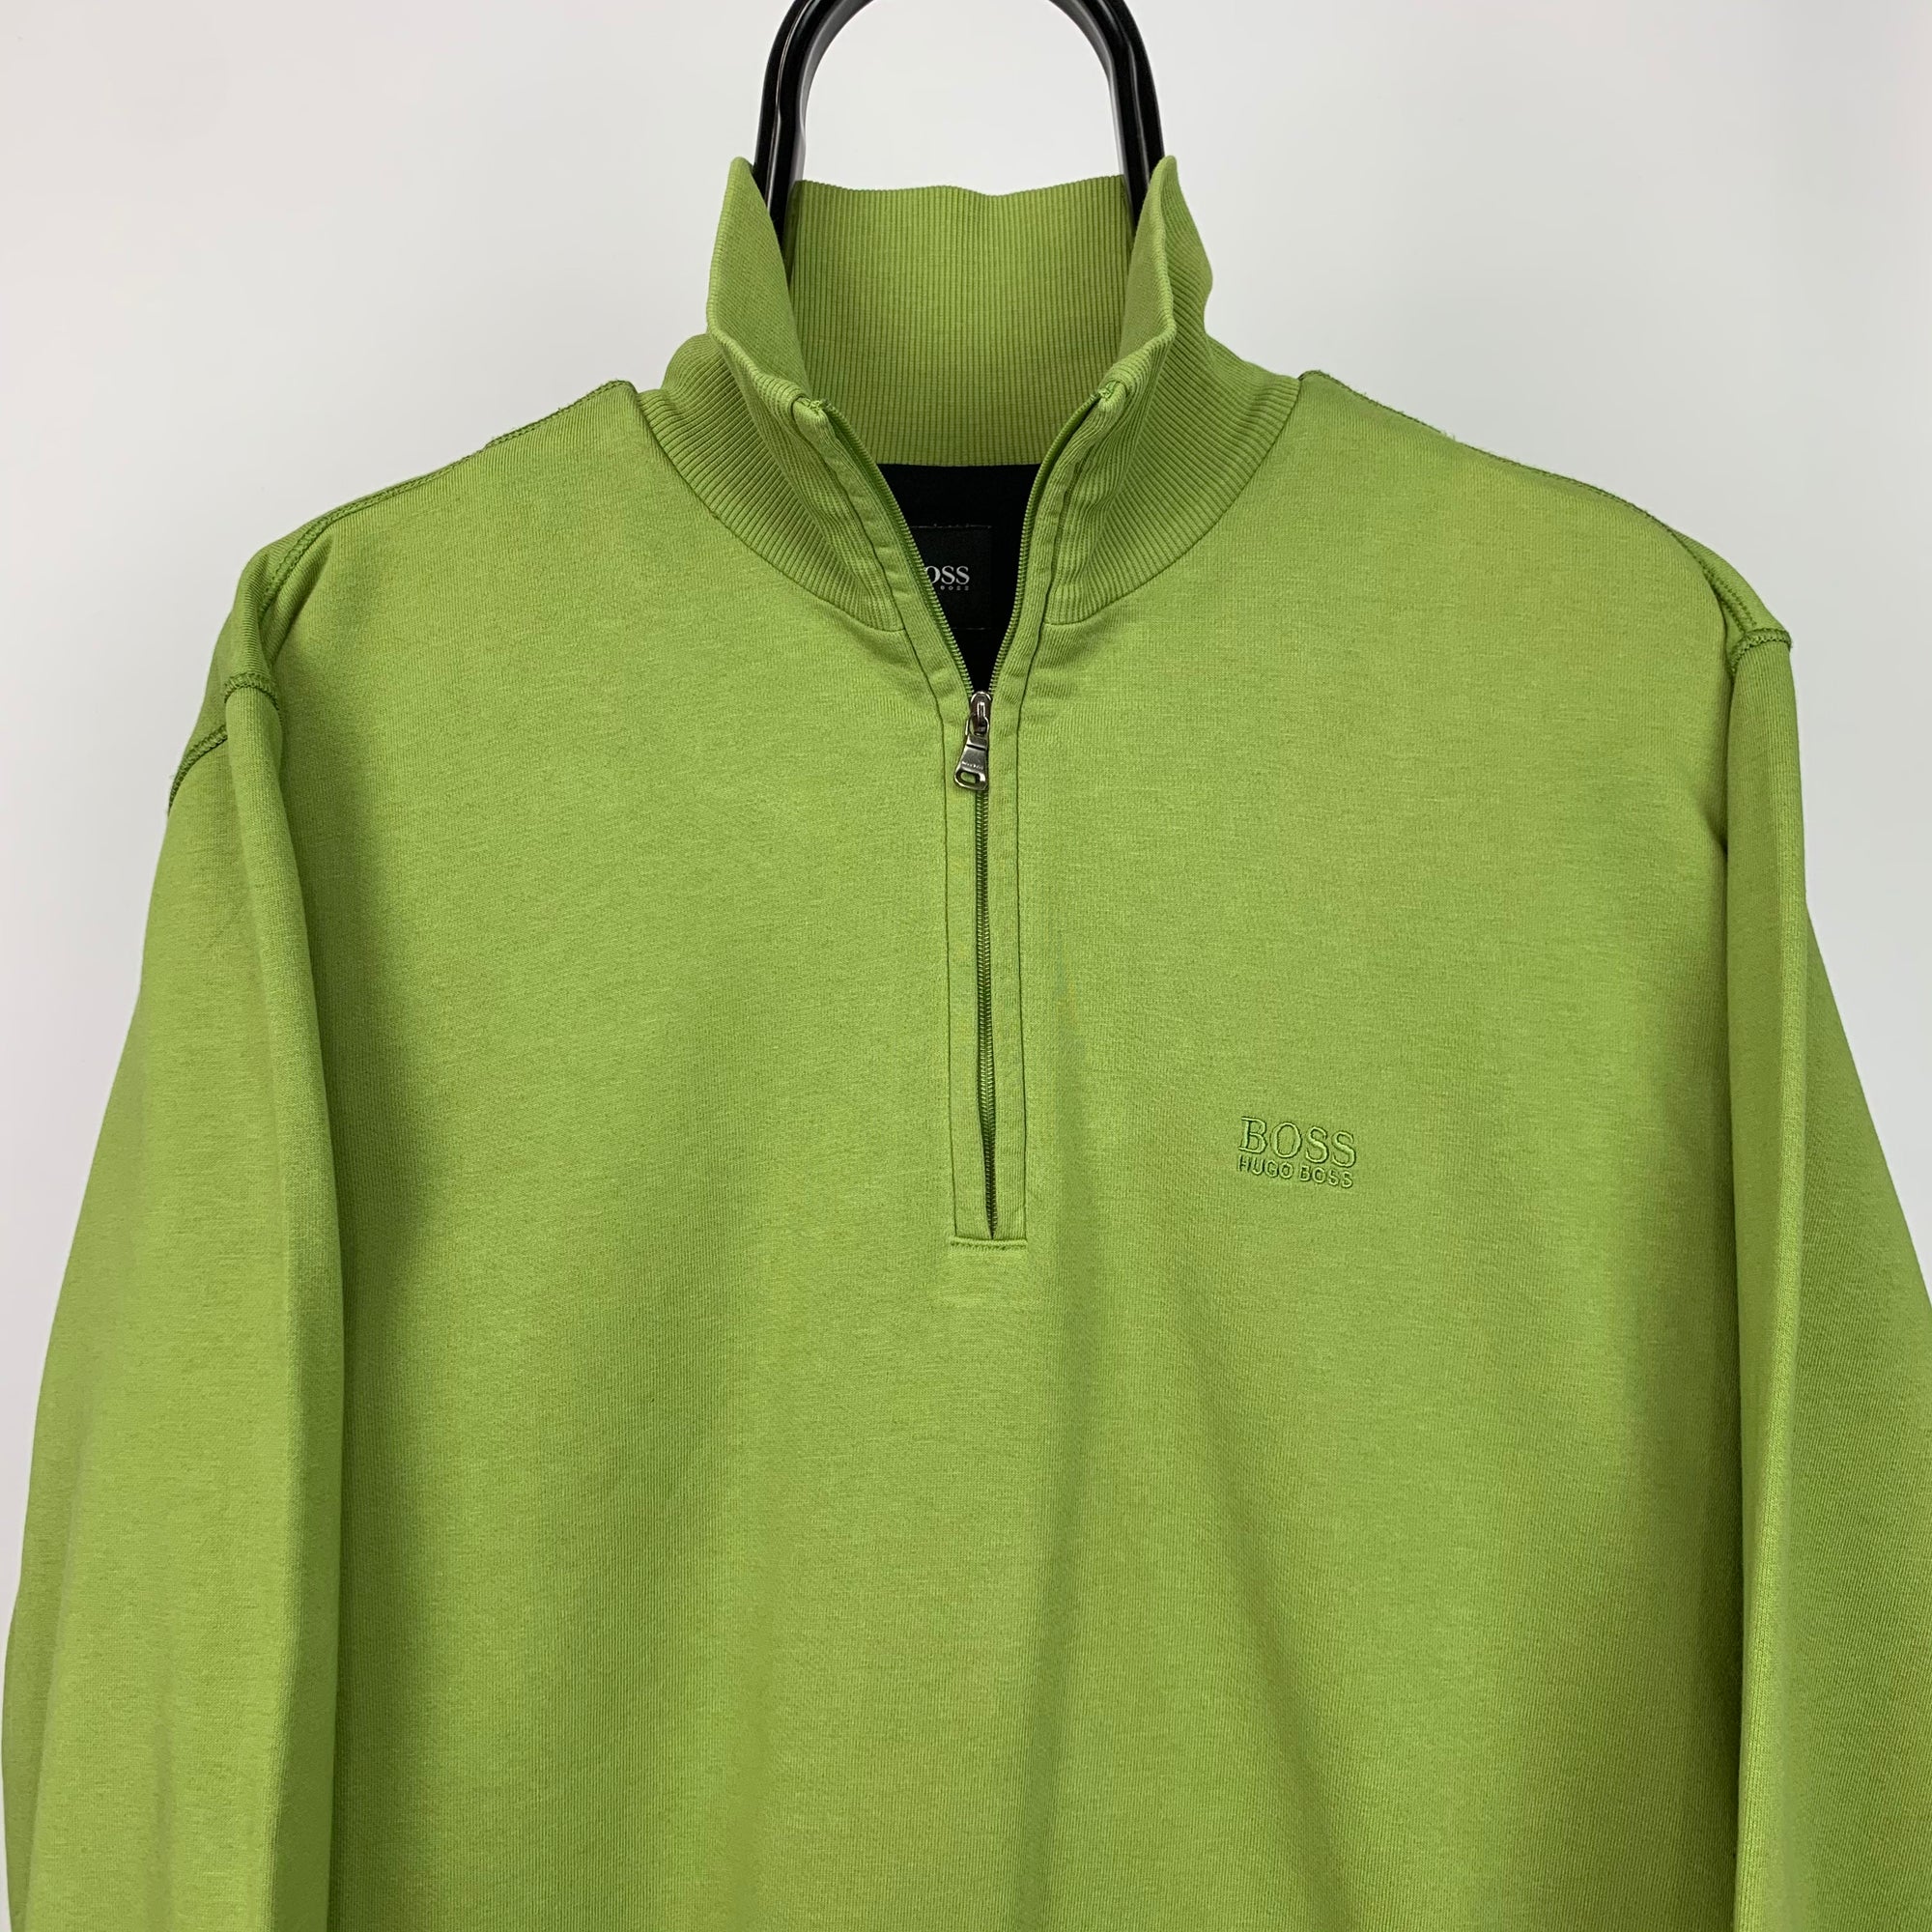 Hugo Boss 1/4 Zip Sweatshirt in Pistachio Green - Men's Large/Women's XL